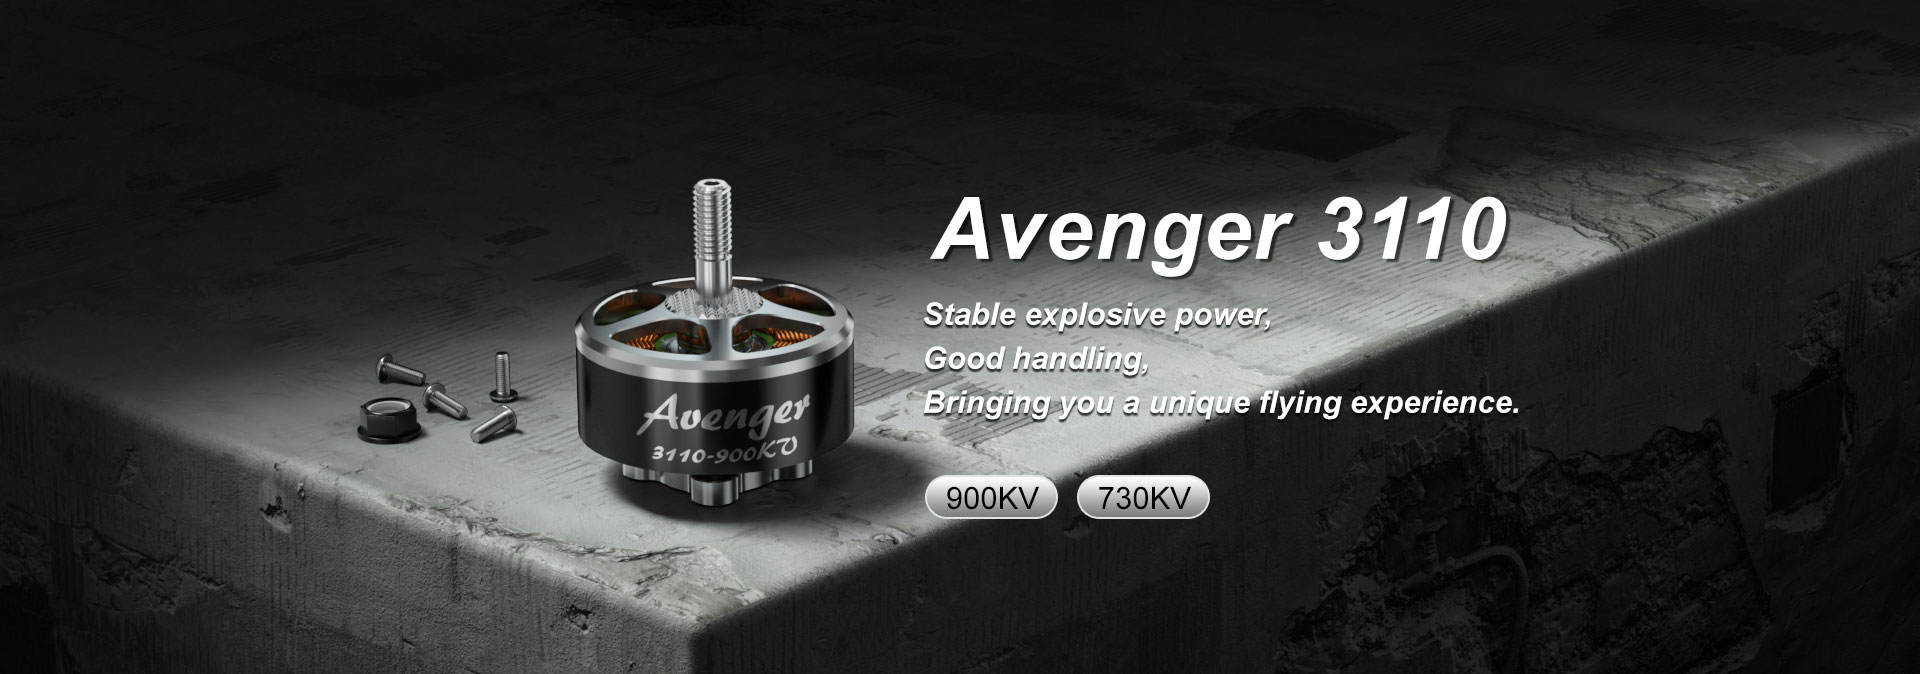 Avenger 3110 730KV/900KV Motor